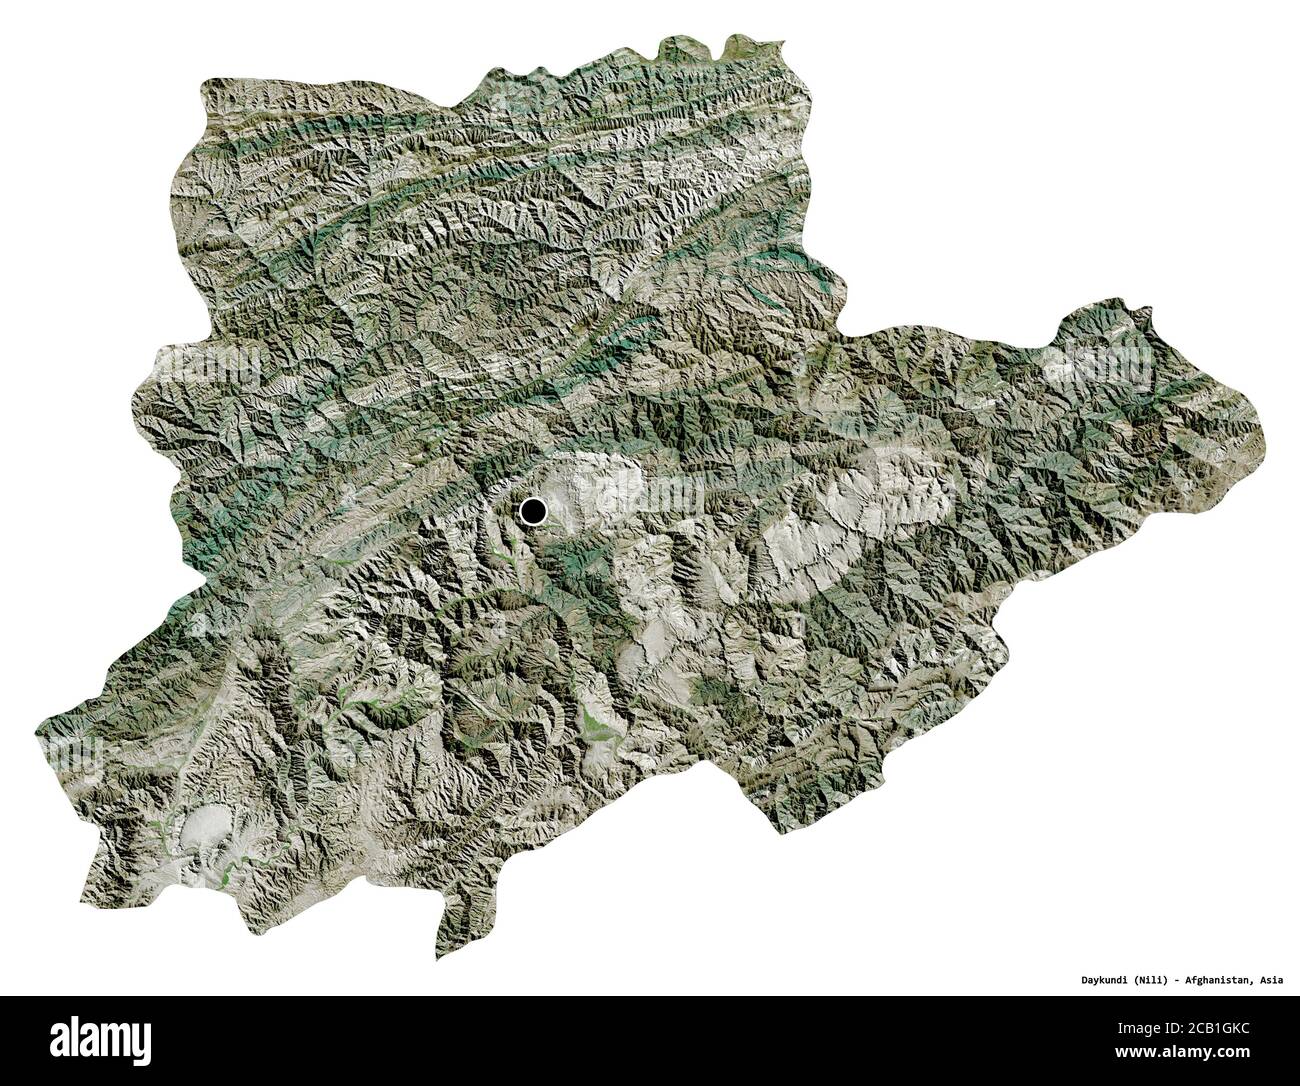 Forma di Daykundi, provincia dell'Afghanistan, con la sua capitale isolata su sfondo bianco. Immagini satellitari. Rendering 3D Foto Stock